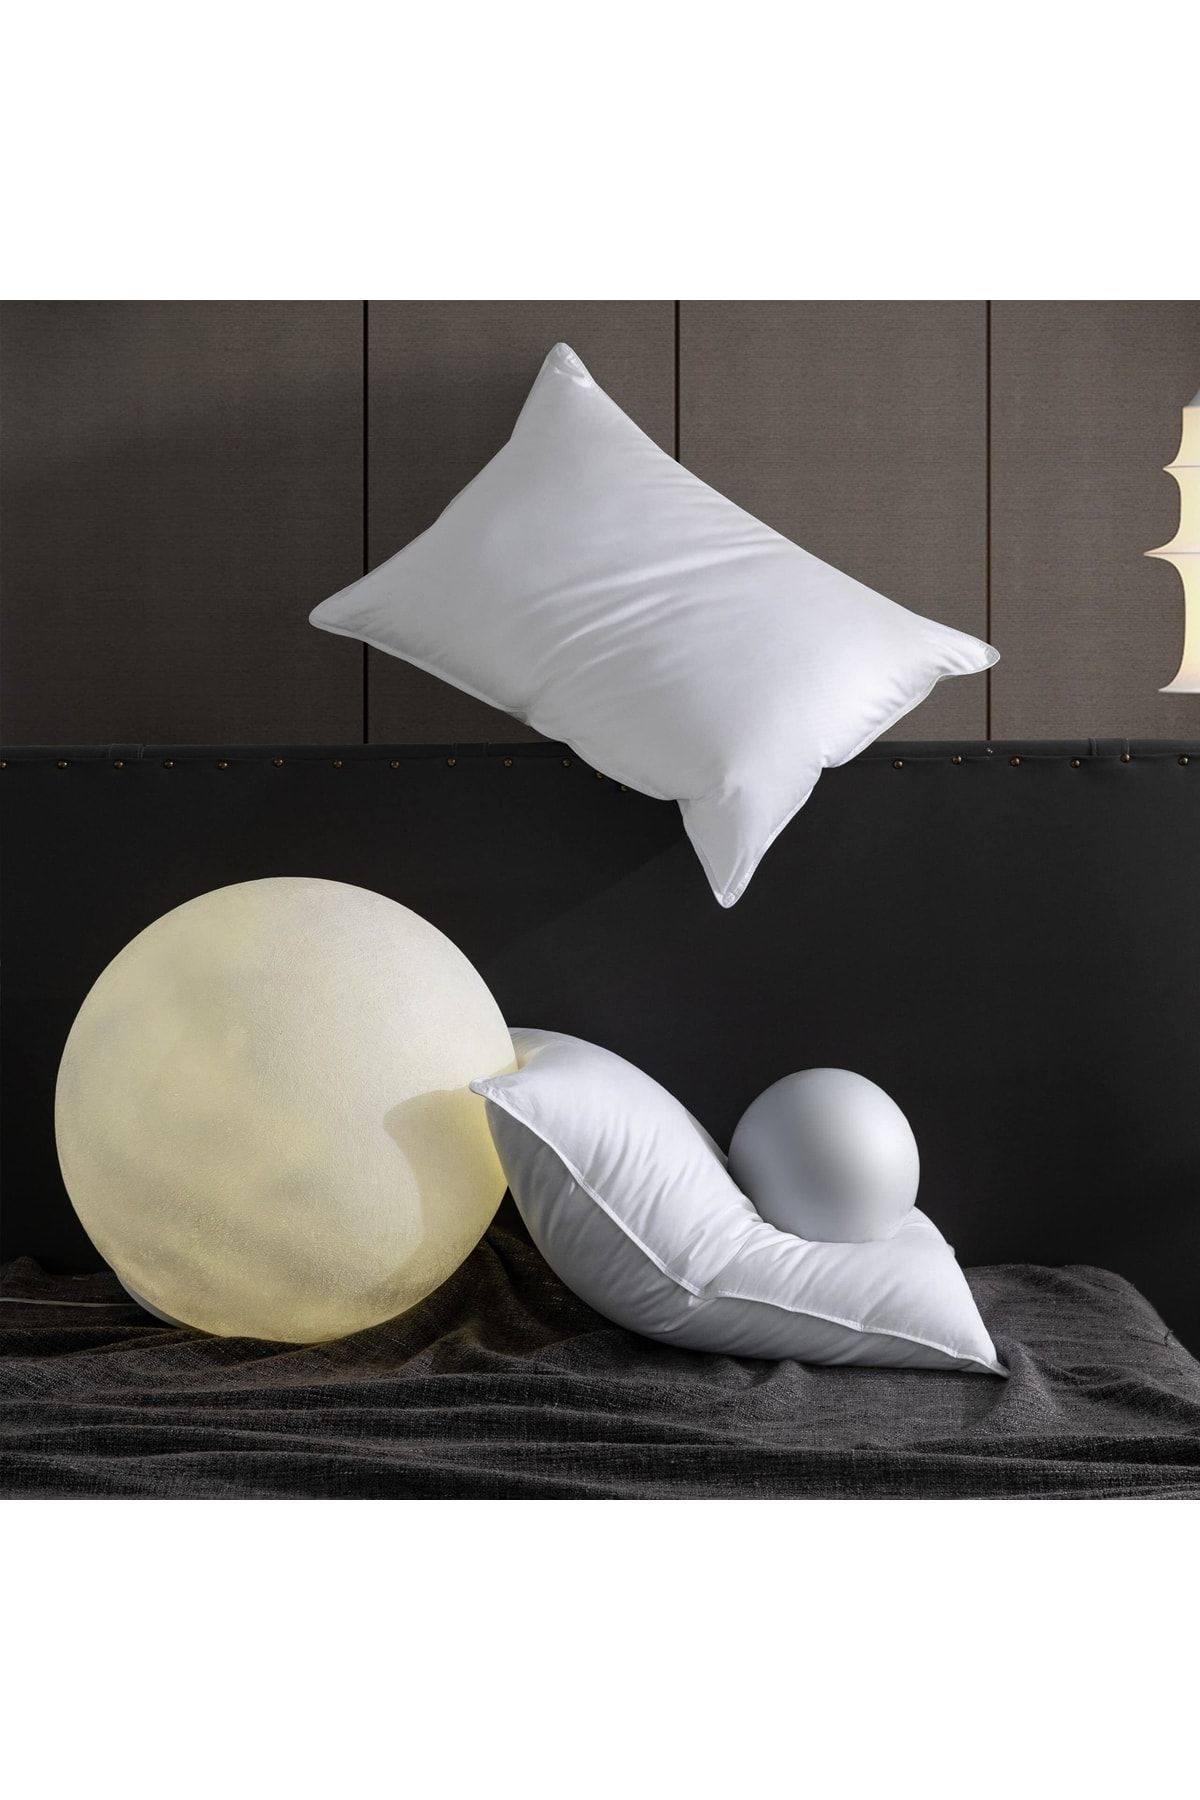 İz Concept Iz Premium 2 Adet Orta Sert Silikon Yastık 50x70 Uyku Yastığı Pamuk Kumaş %100 Silikon Elyaf Dolgu